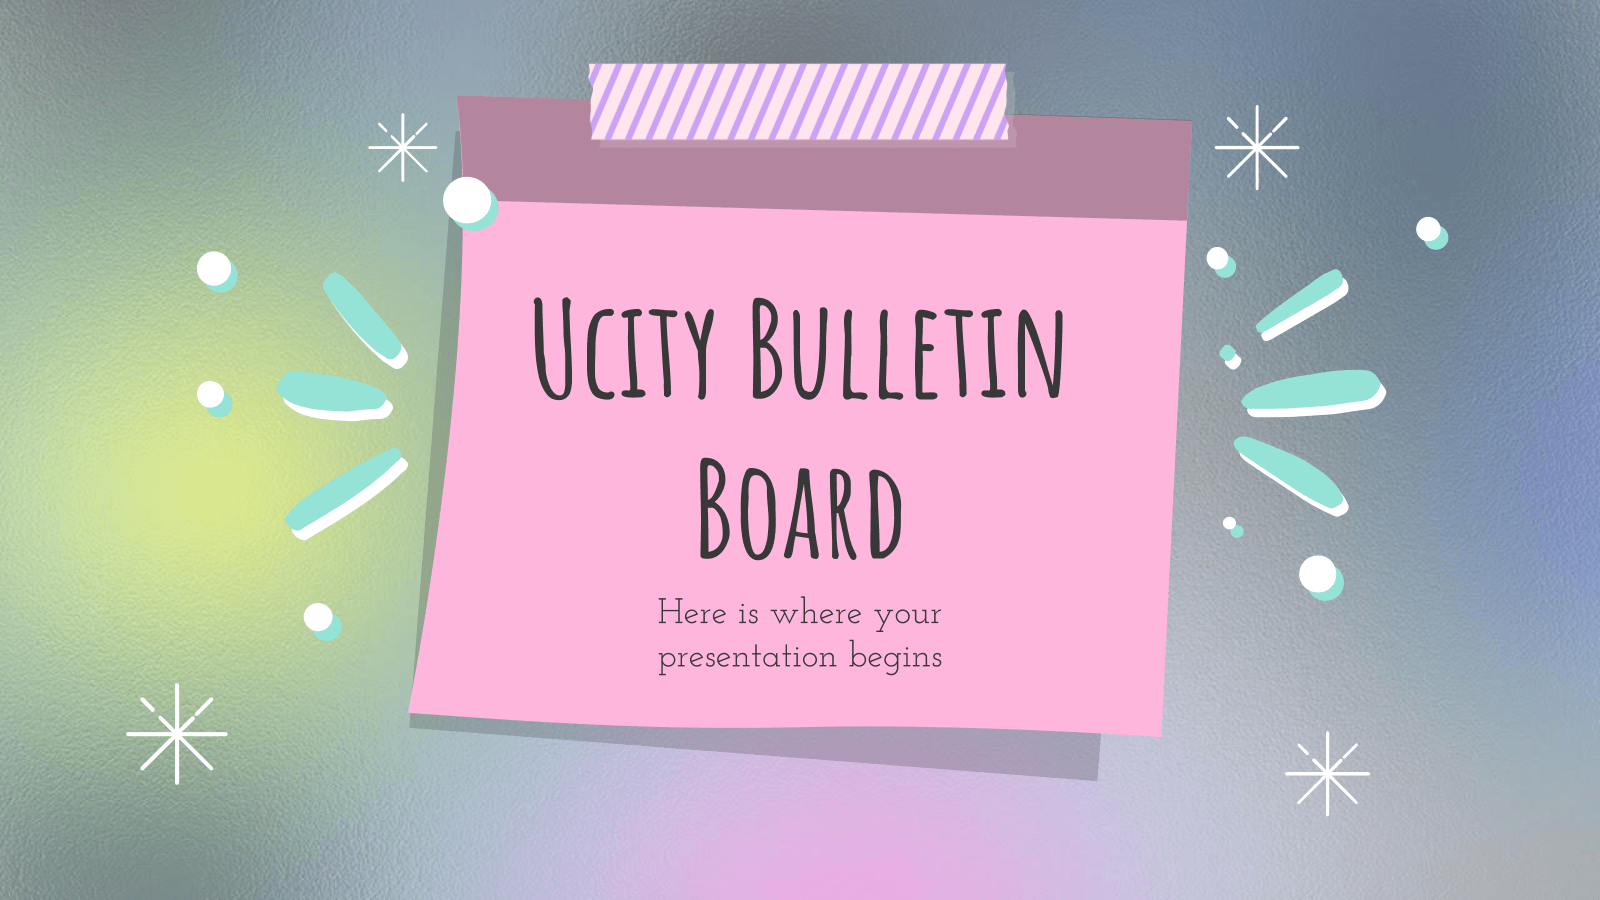 Ucity公告板PowerPoint模板